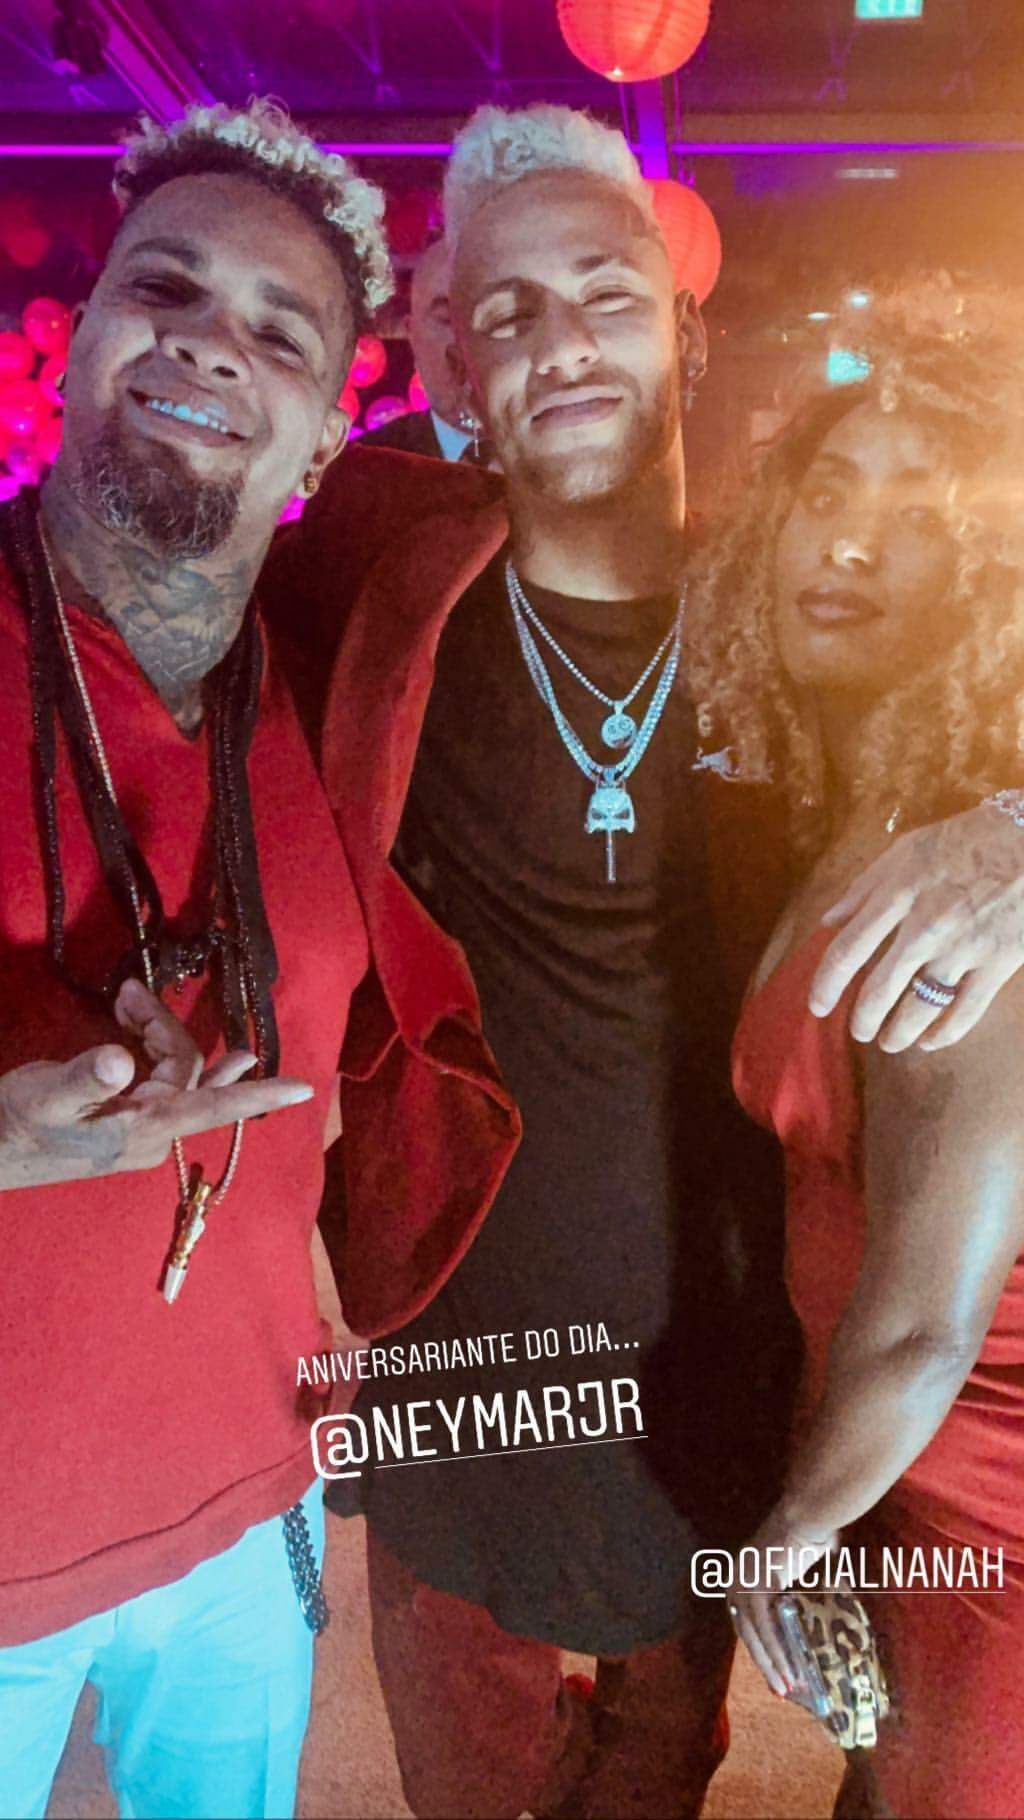 Neymar comemora 27 anos em Paris com shows de Safadão,Marília Mendonça,Rodriguinho e Gaab.